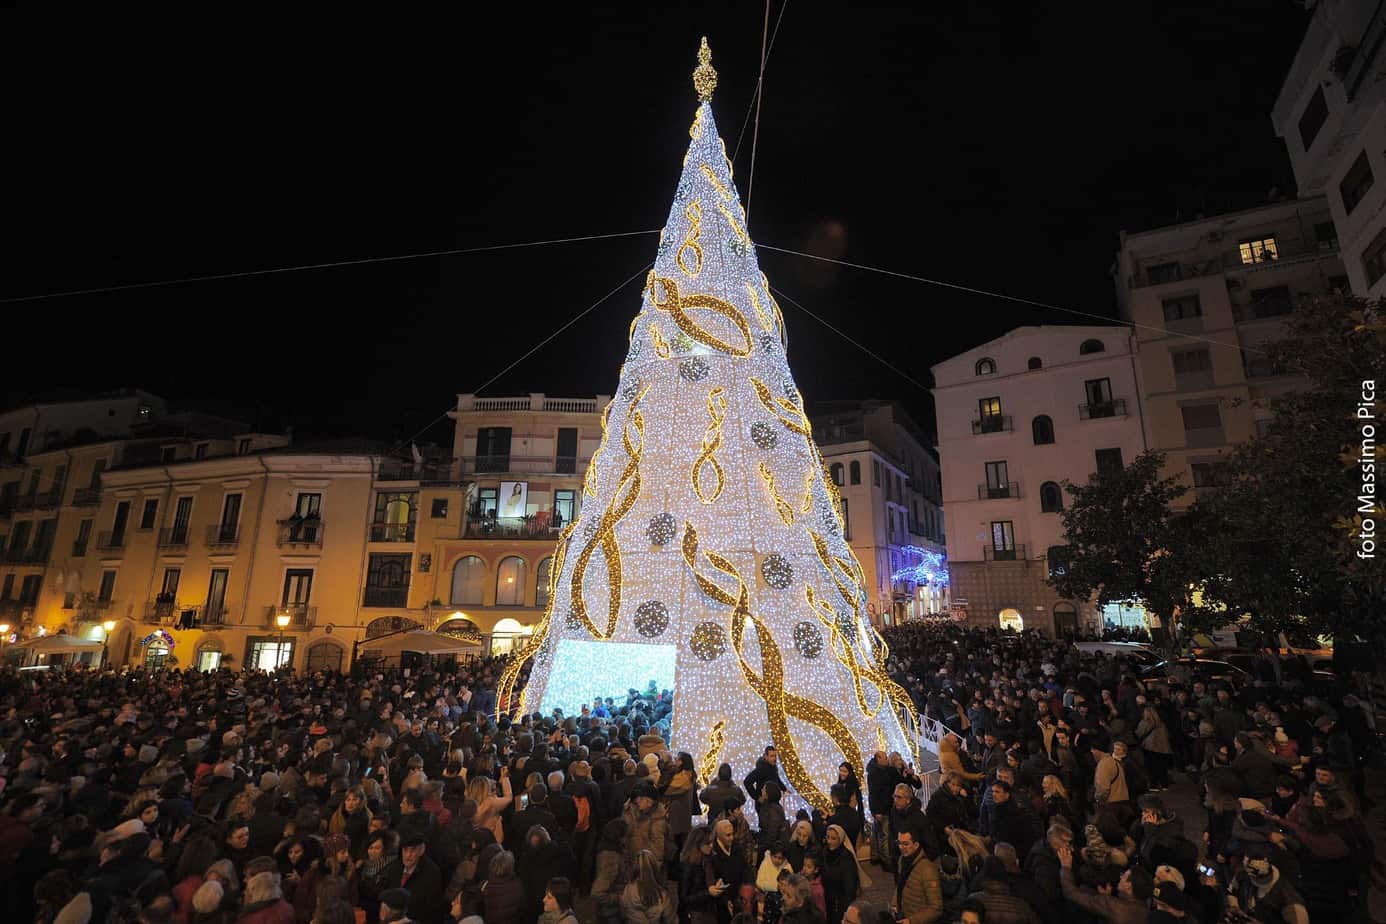 Luci Di Natale Salerno.Luci D Artista 2019 Dopo L Inaugurazione E Attesa Per L Albero Di Natale Paperboy Salerno